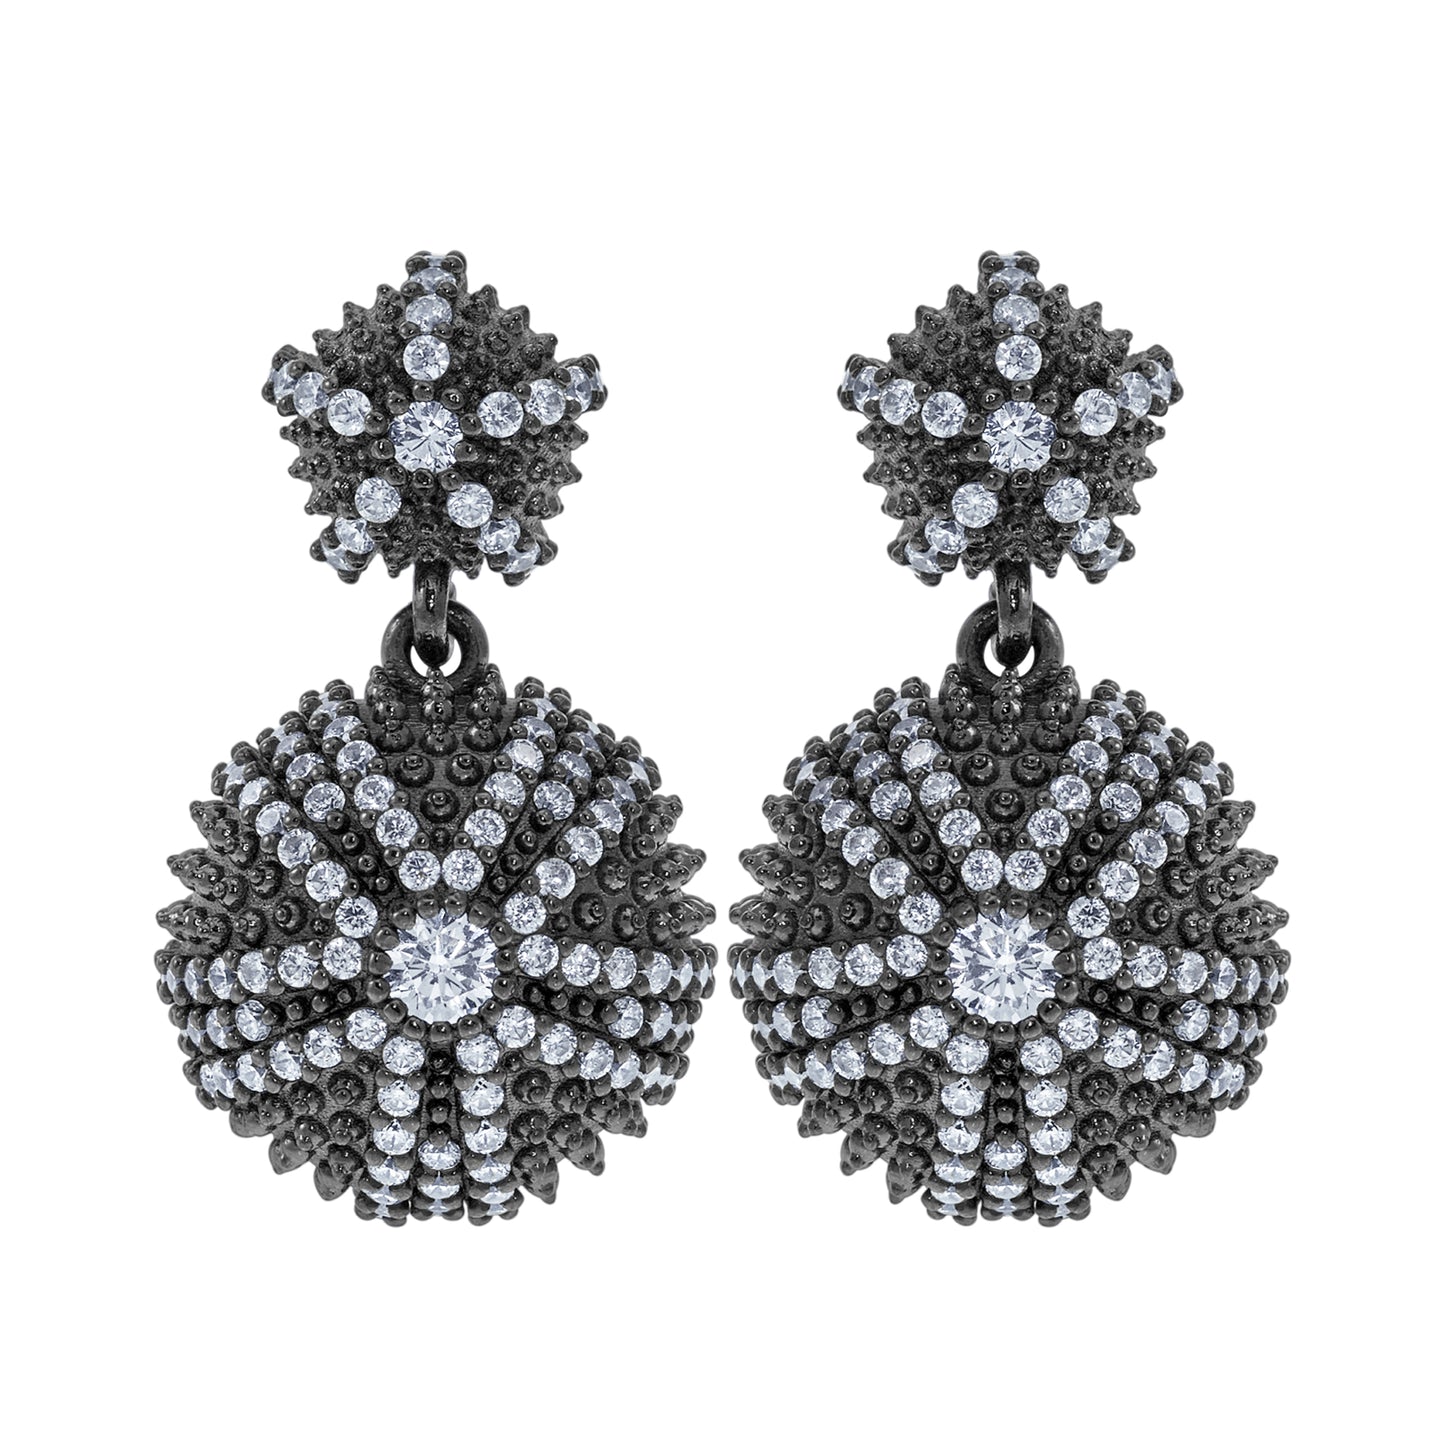 Sea Urchin Cocktail Earrings